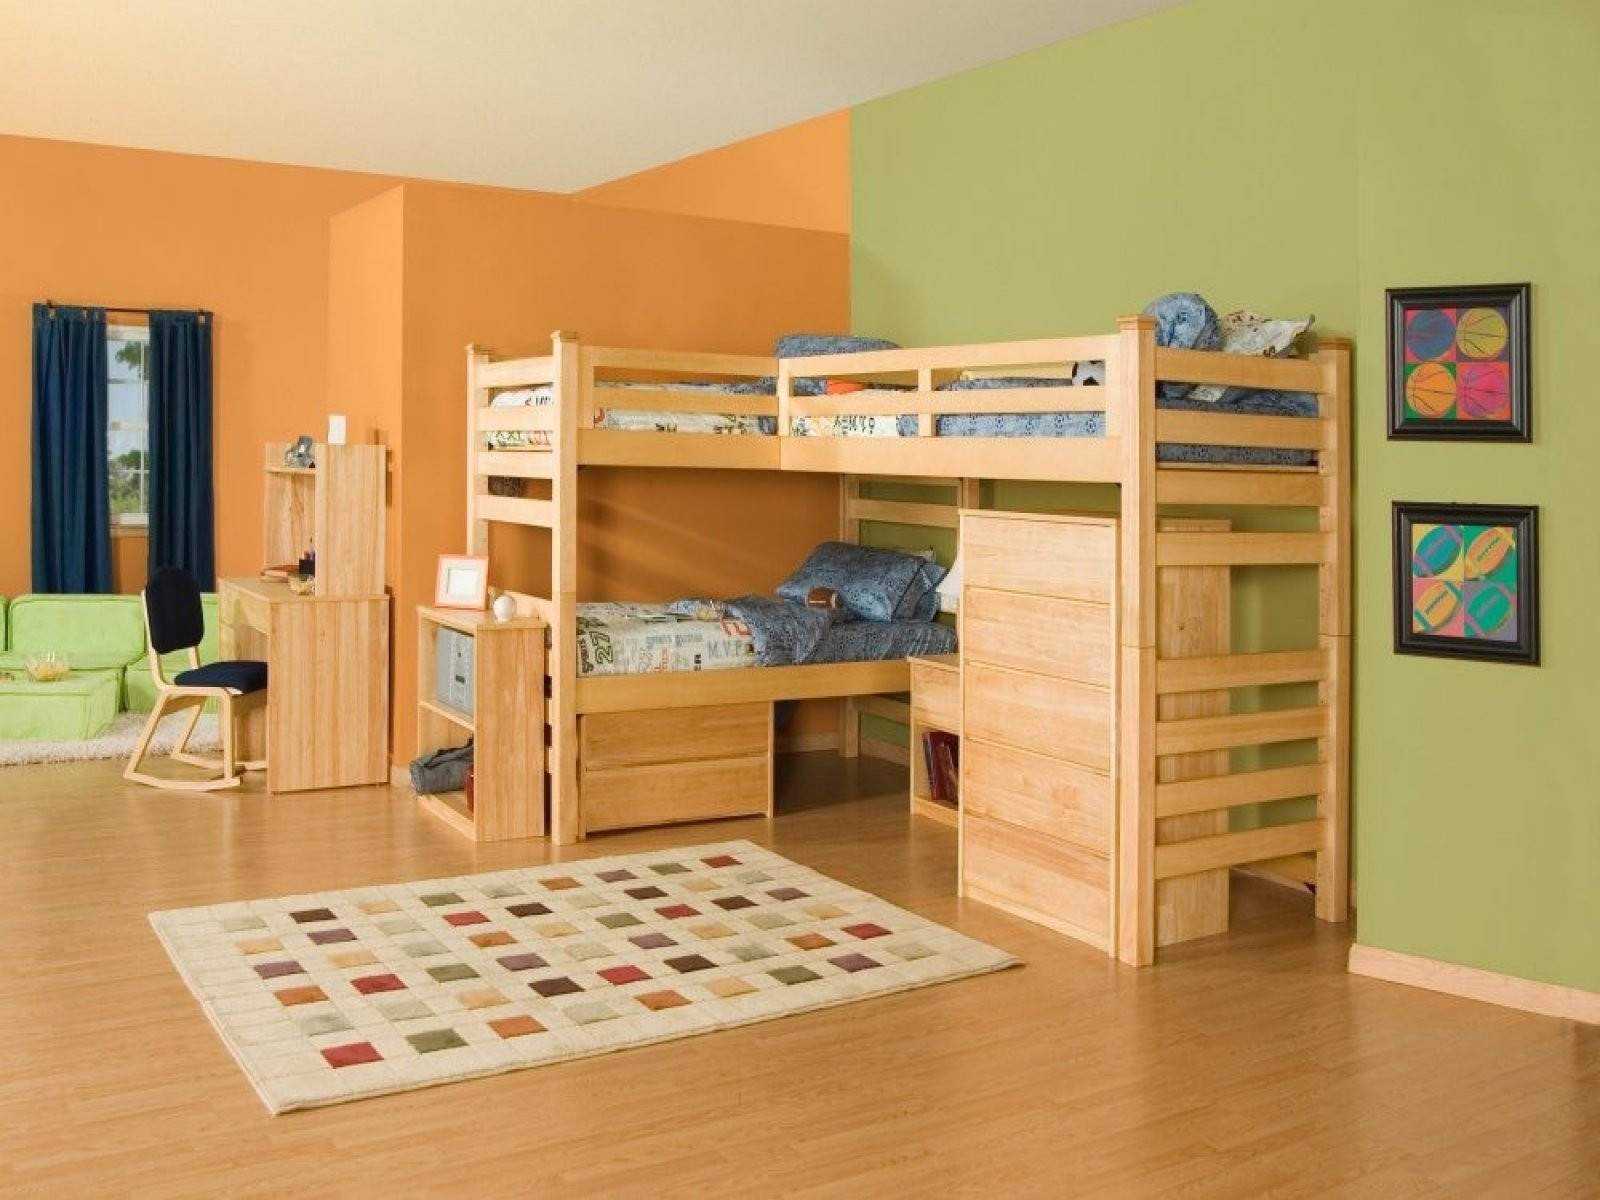 Boys Bedroom Set
 Boys Bedroom Sets Best Tips to Know Home Furniture Design